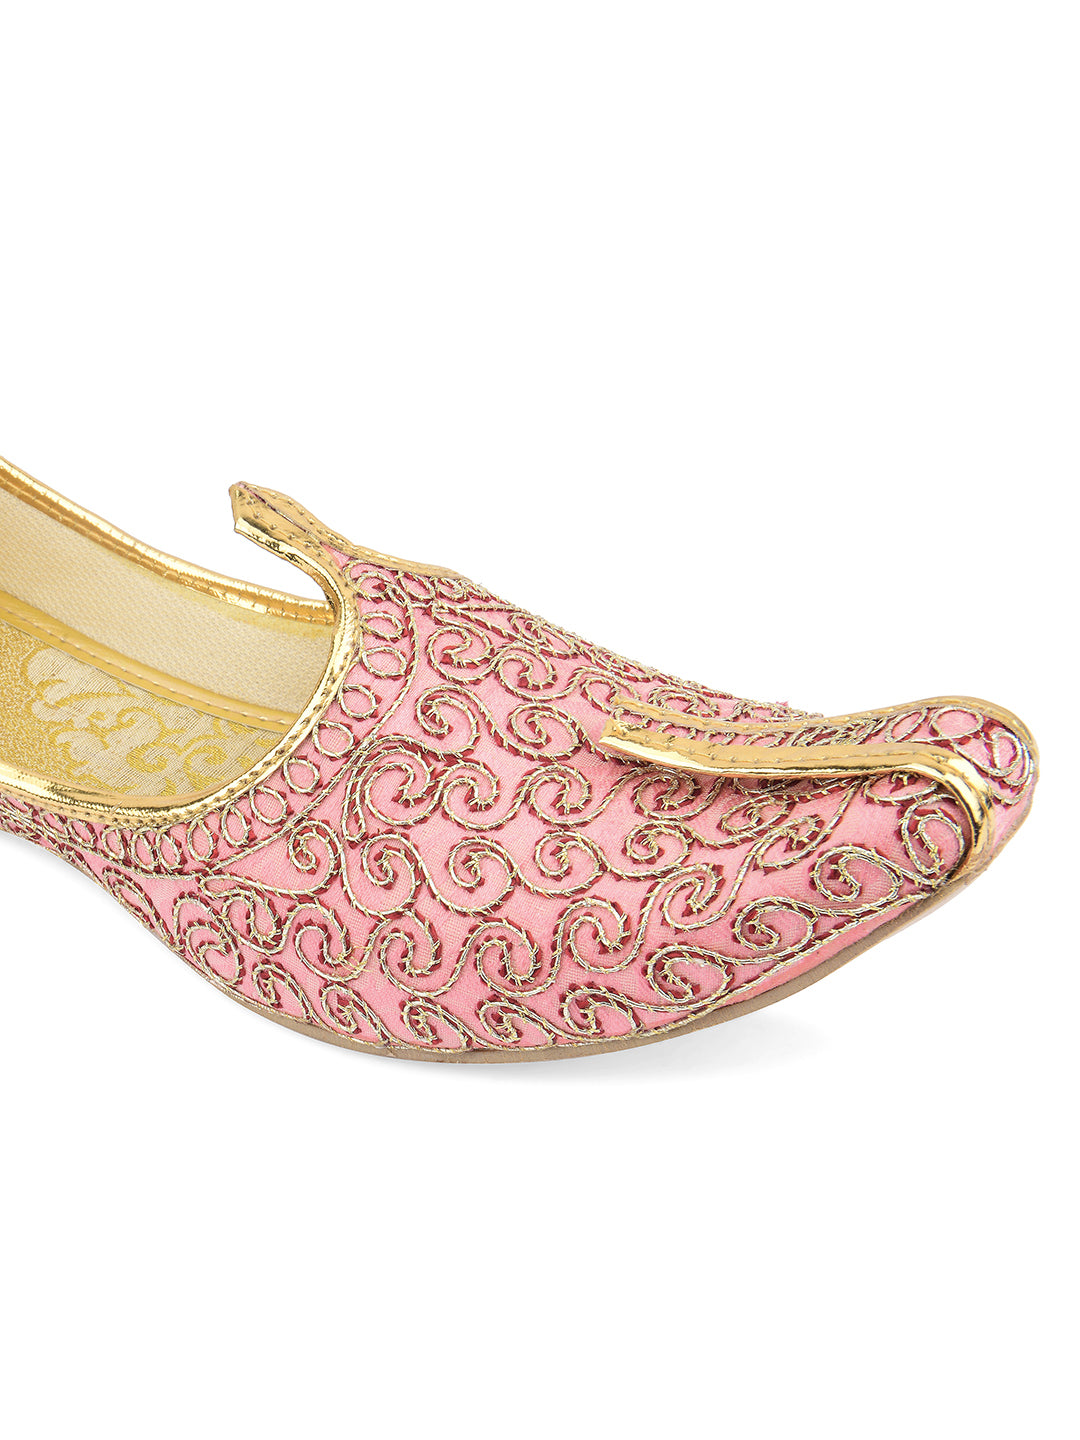 DESI COLOUR Mens Pink Ethnic Footwear/Punjabi Jutti